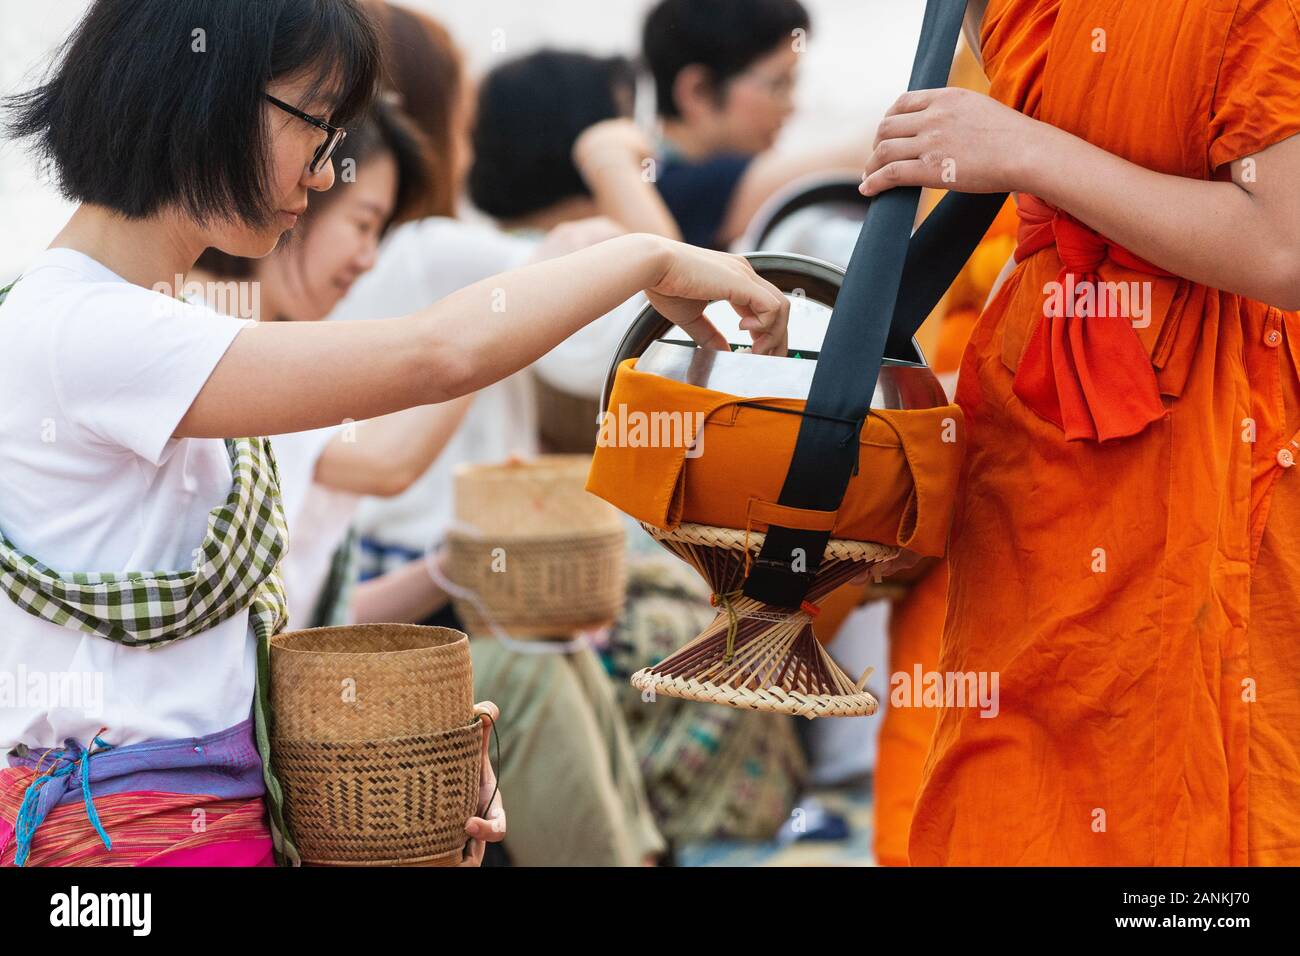 Luang Prabang, Laos - Mai 2019 : femme laotienne en faisant des offrandes aux moines bouddhistes pendant la cérémonie traditionnelle aumône matin Banque D'Images